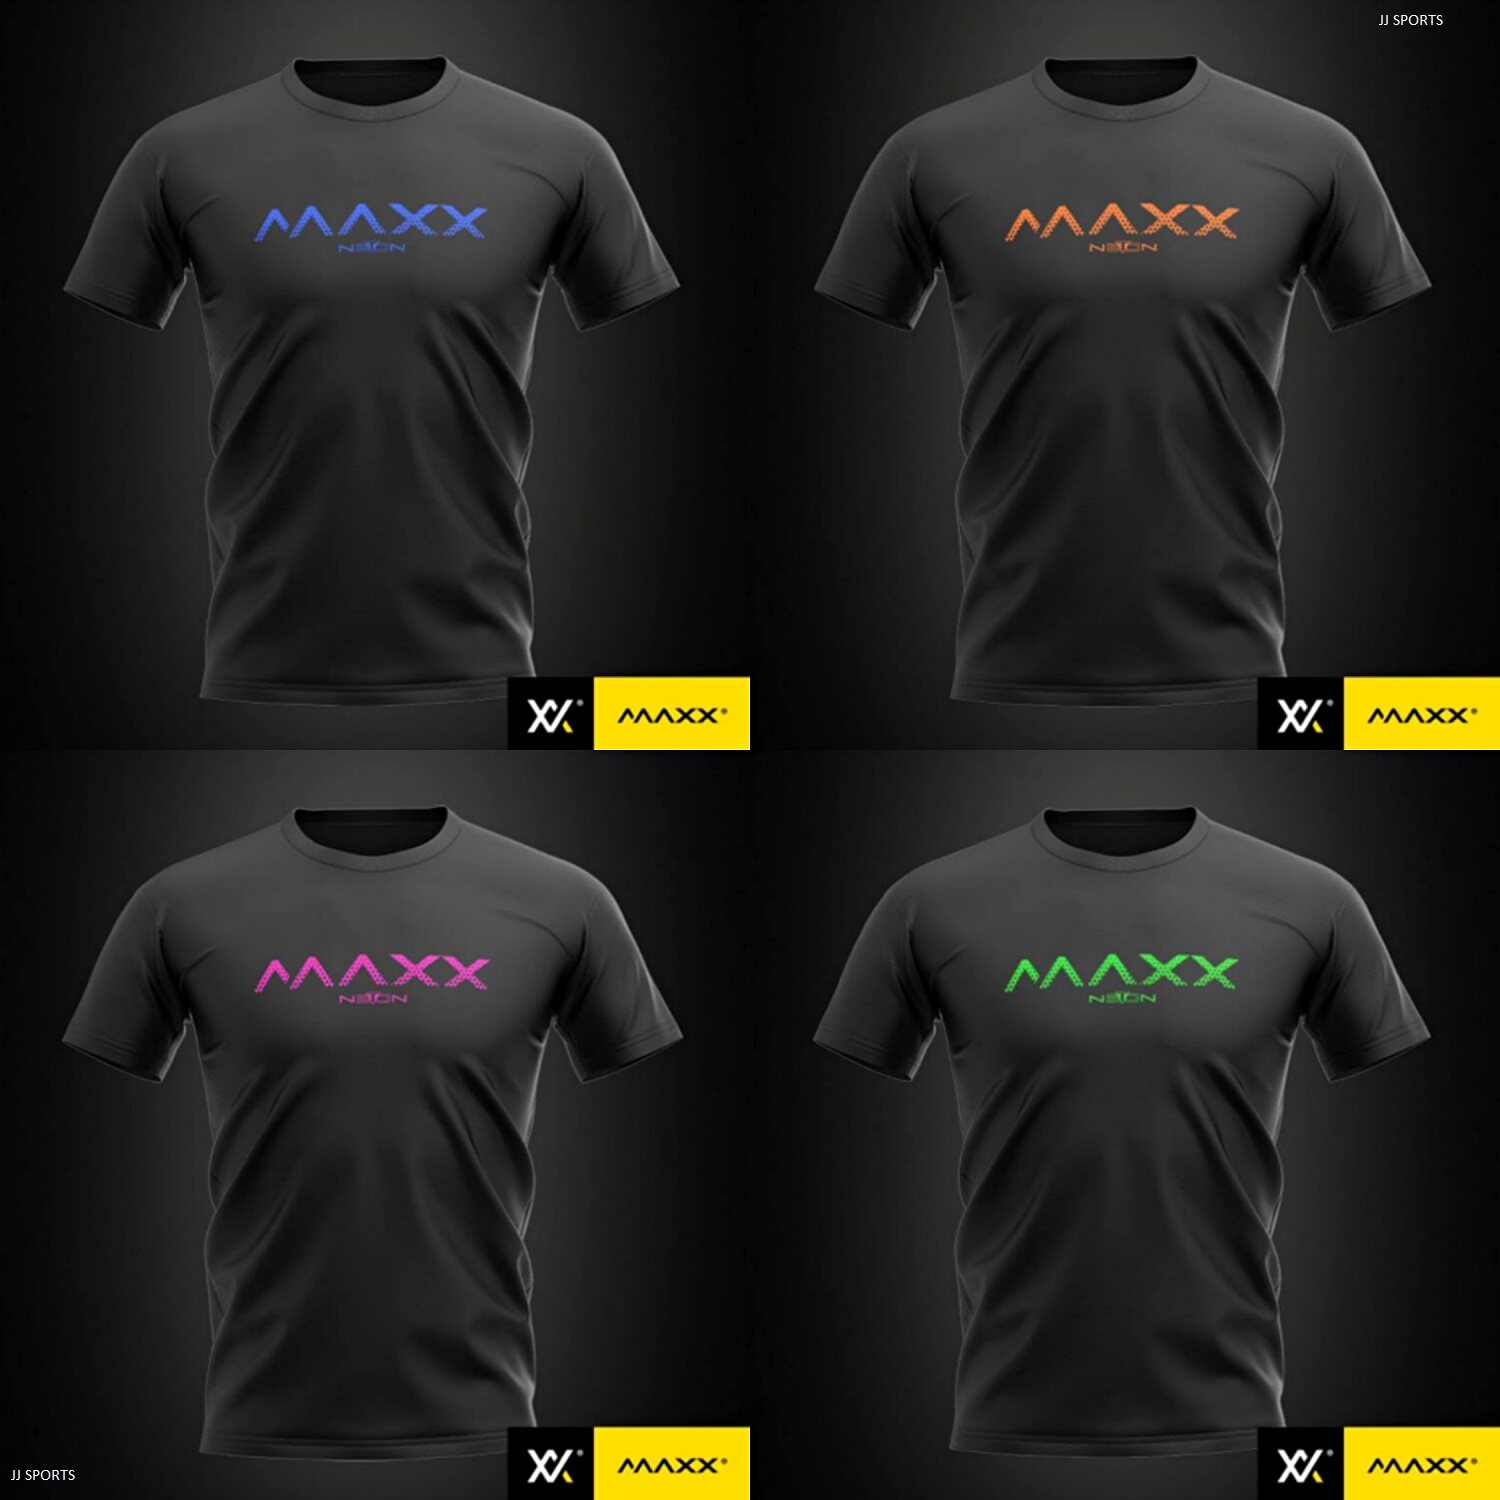 maxx jersey off 61% - shuder.org